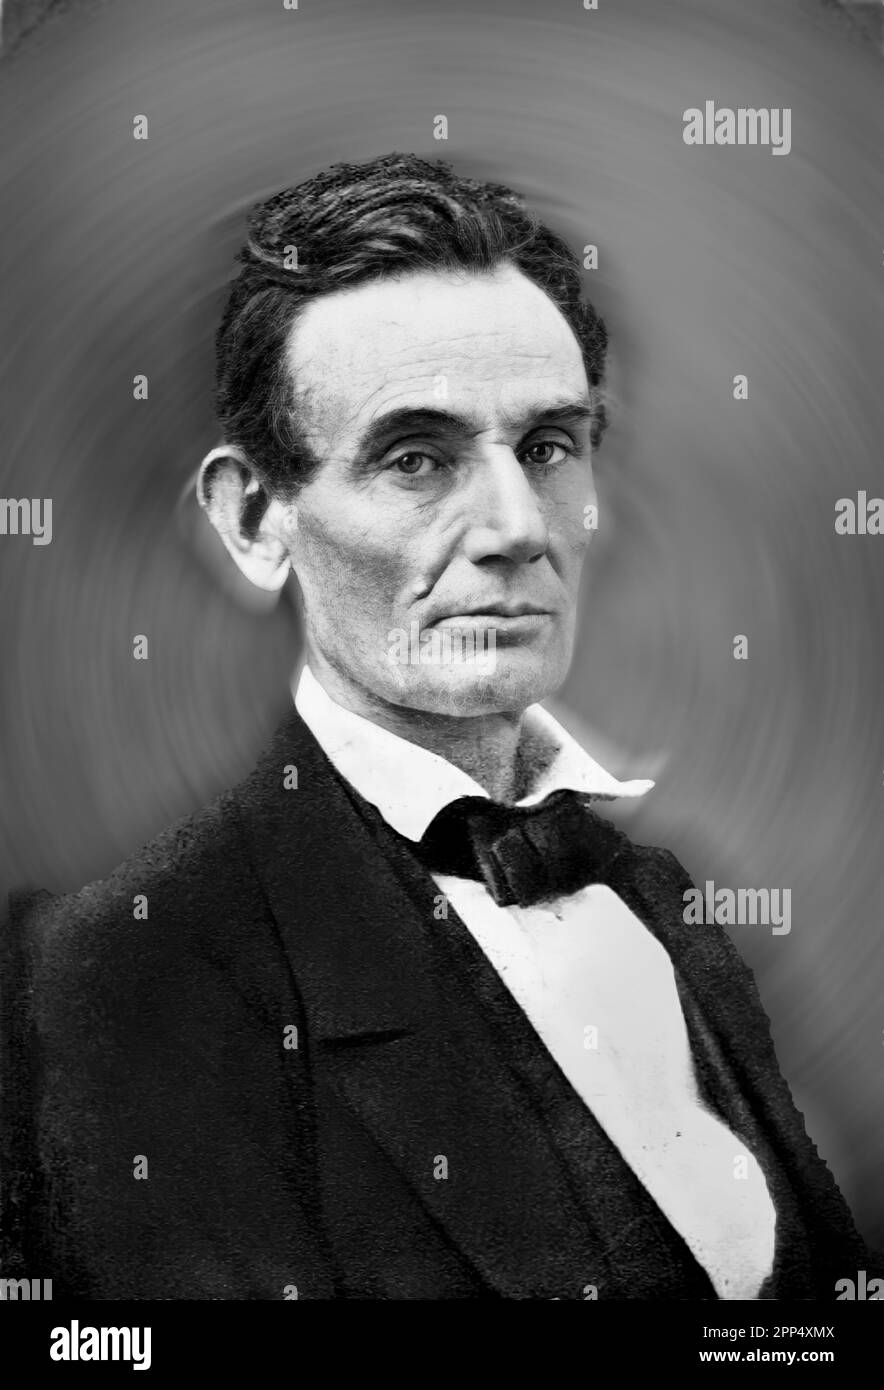 Fotografiedruck (1892) eines Porträtfotos von Abraham Lincoln, das 1860 aufgenommen wurde, bevor er 1861 US-Präsident wurde. Bitte beachten Sie, dass t Stockfoto